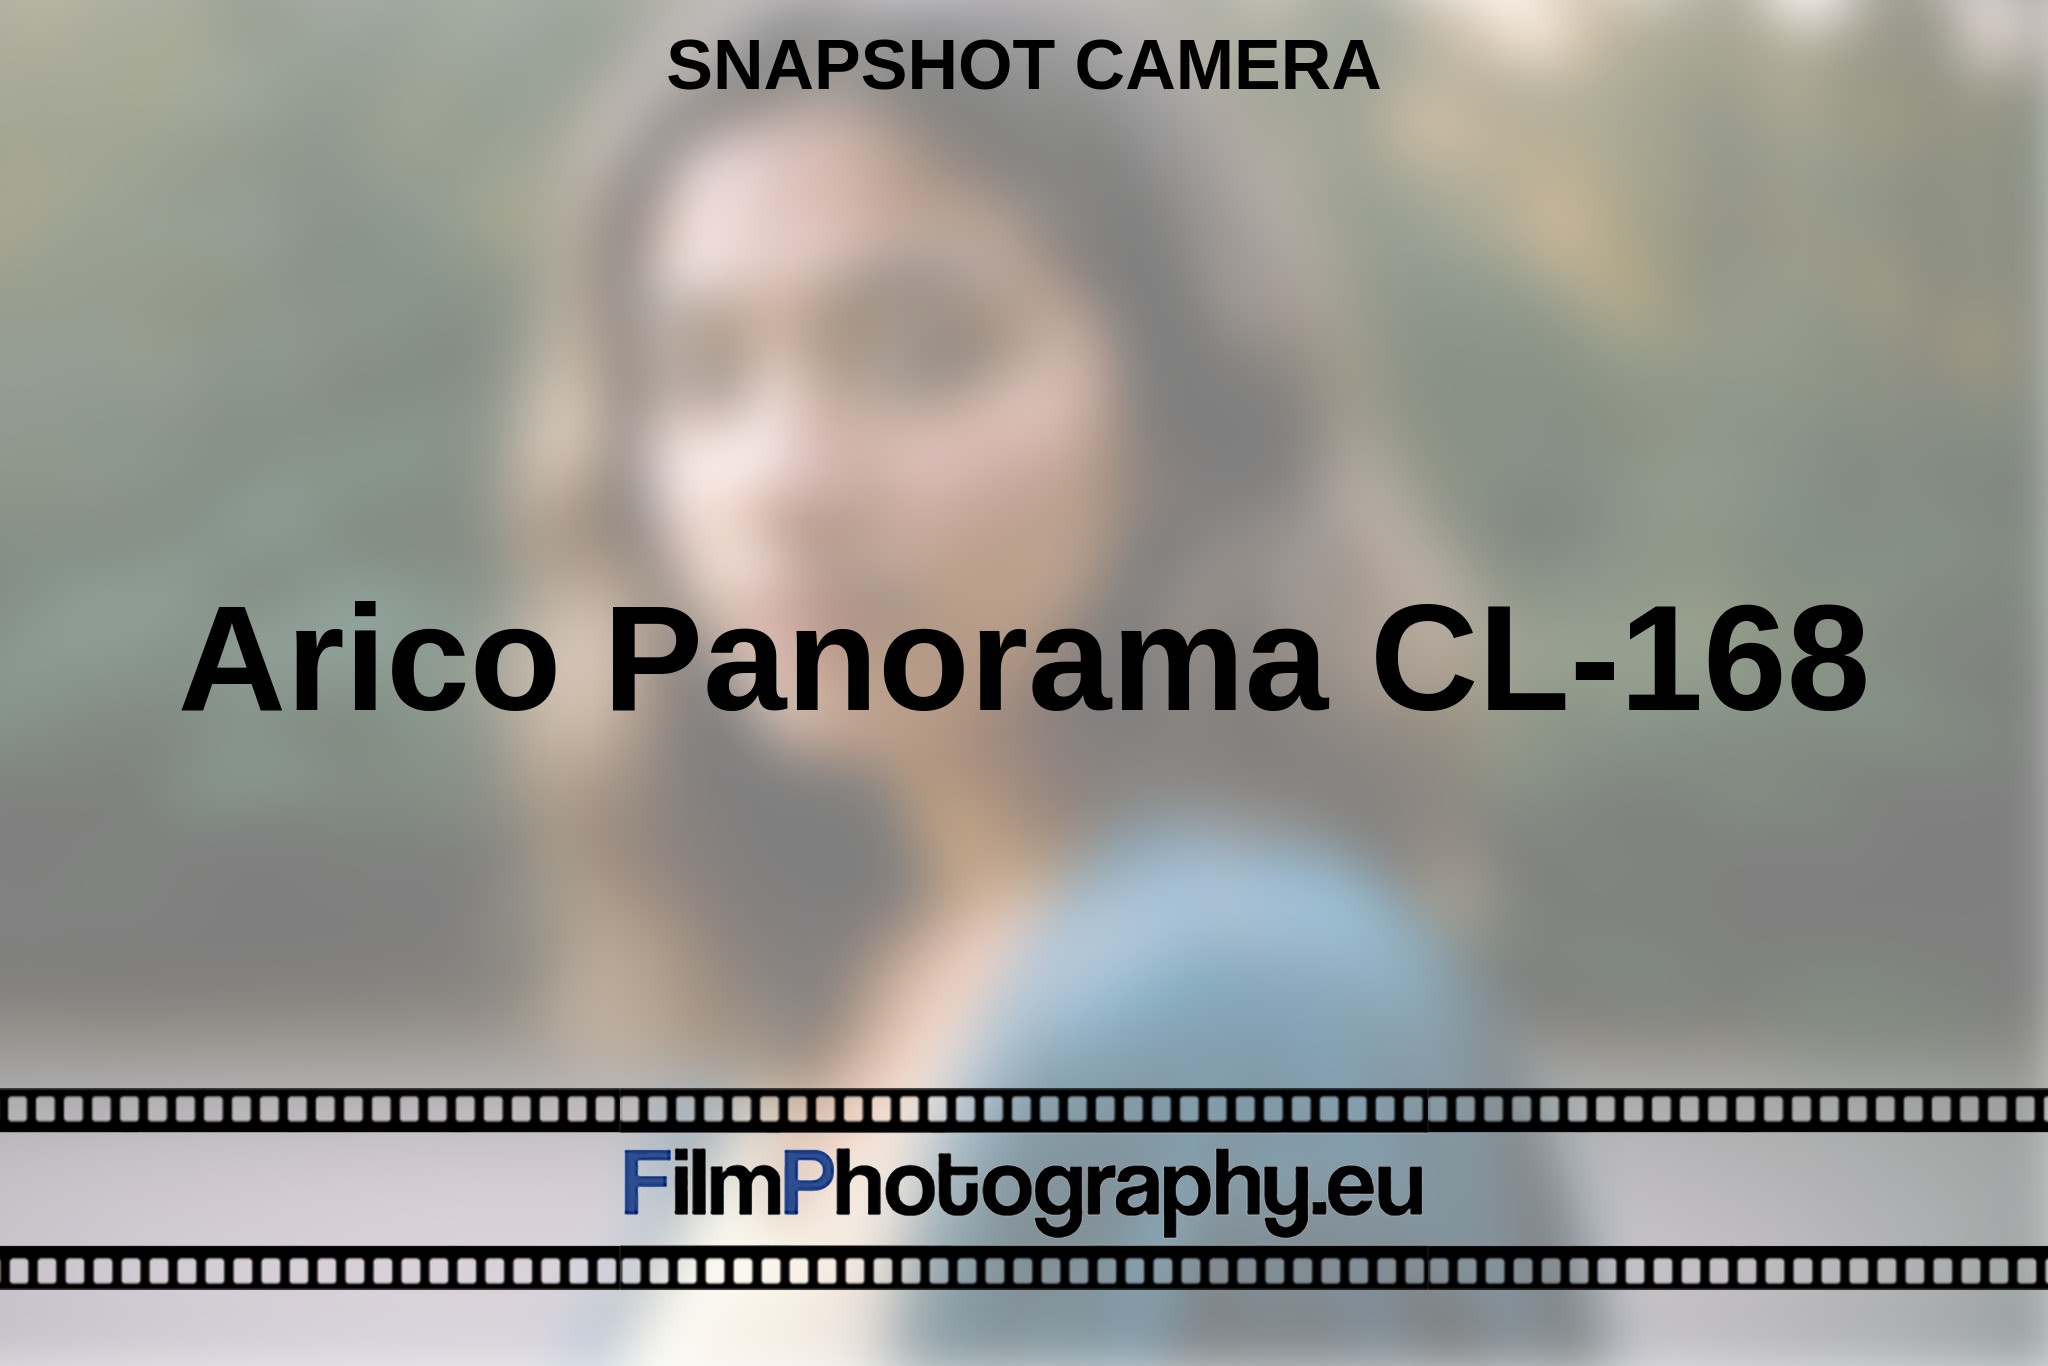 arico-panorama-cl-168-snapshot-camera-en-bnv.jpg